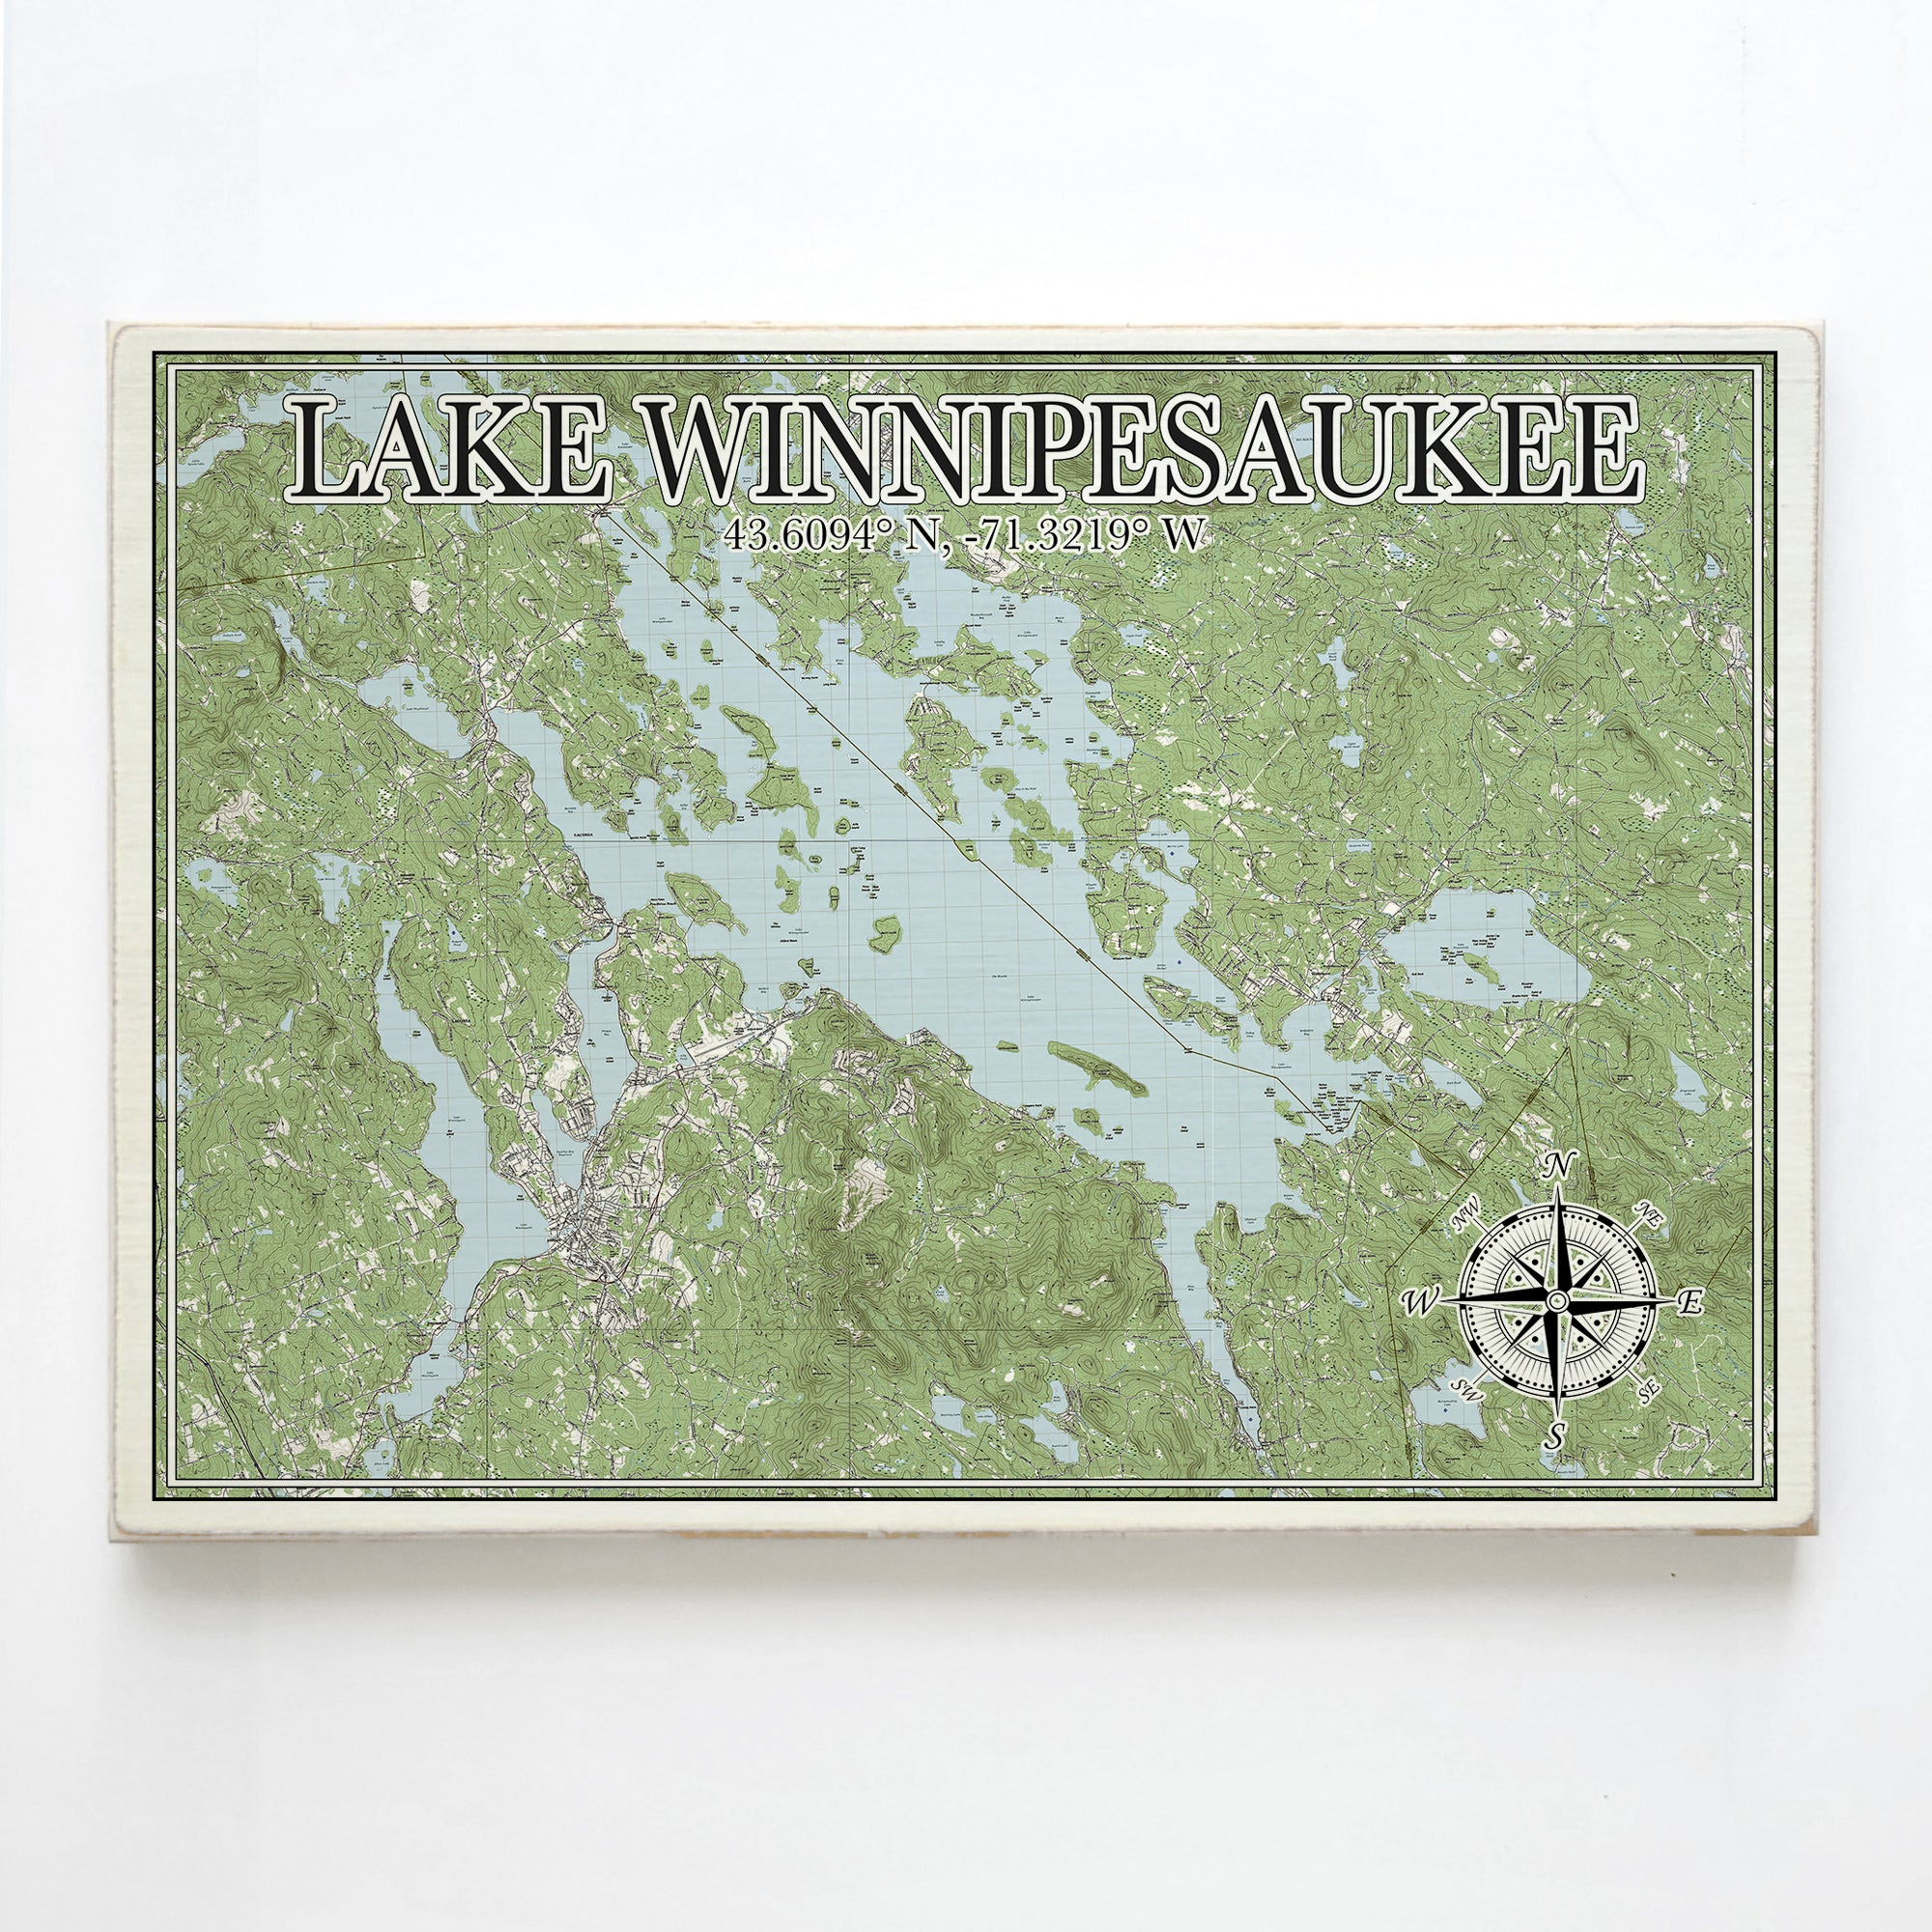 Lake Winnipesaukee, NH  Plank Map